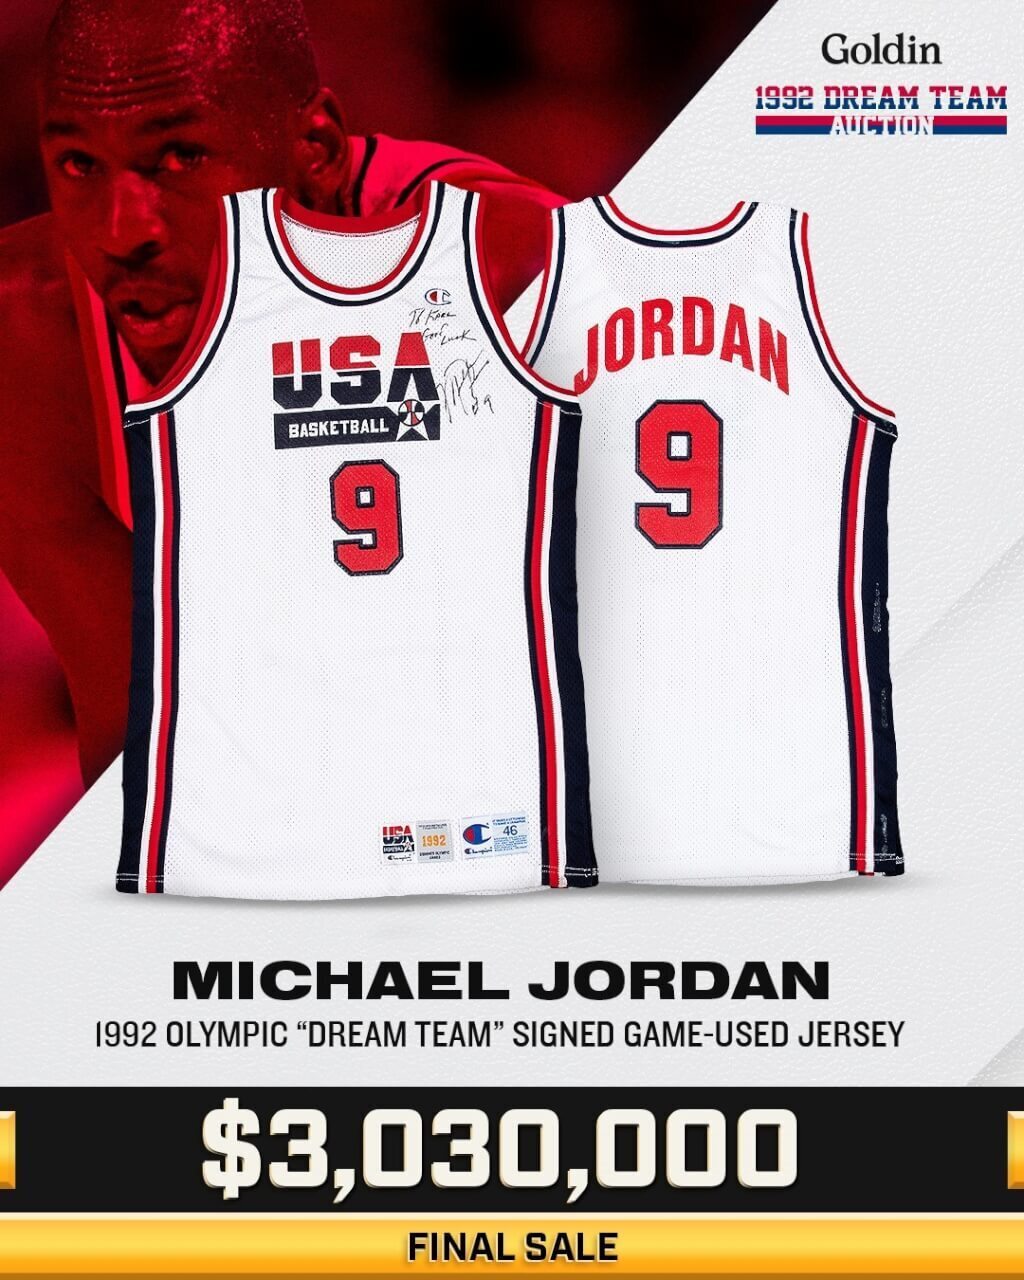 Chiếc áo thi đấu năm 1992 của huyền thoại bóng rổ Michael Jordan được bán với giá 93 triệu Đài tệ